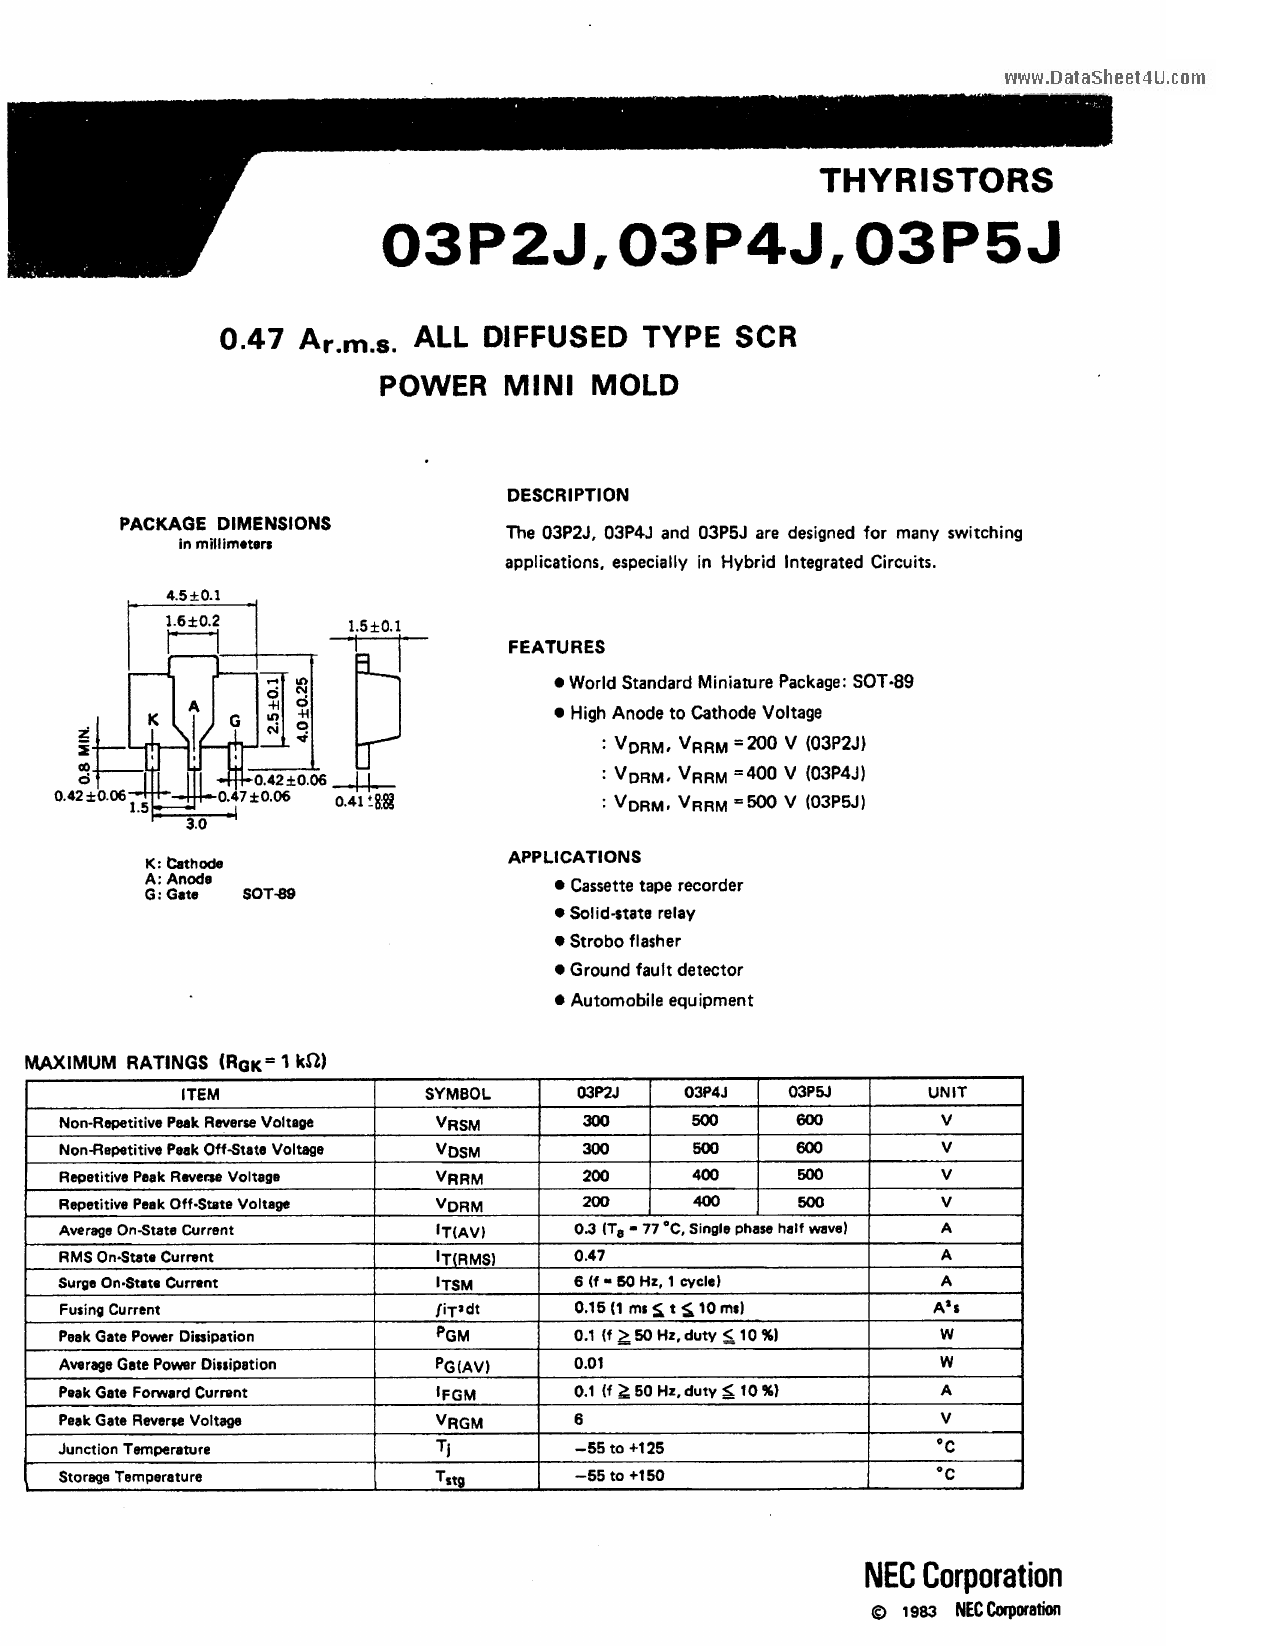 03P2J datasheet, circuit